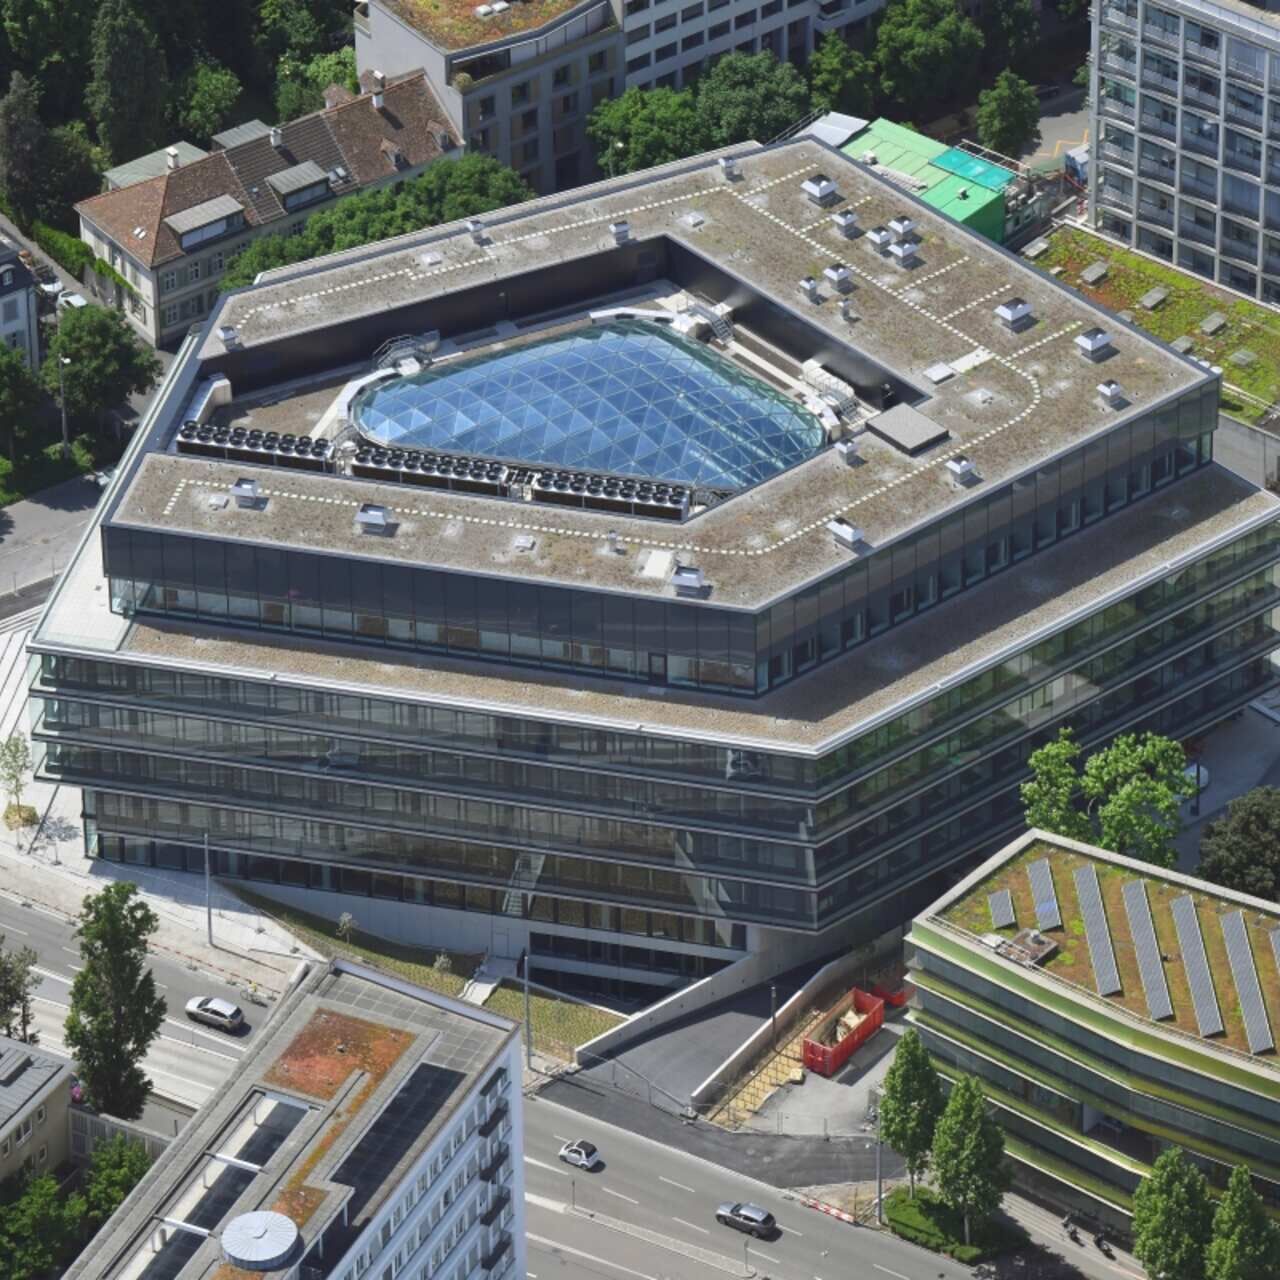 Inžinierska počítačová biológia: od matematickej teórie k bunkám ľudského tela vo výskume v budove BSS Federálneho technologického inštitútu v Zürichu v Bazileji